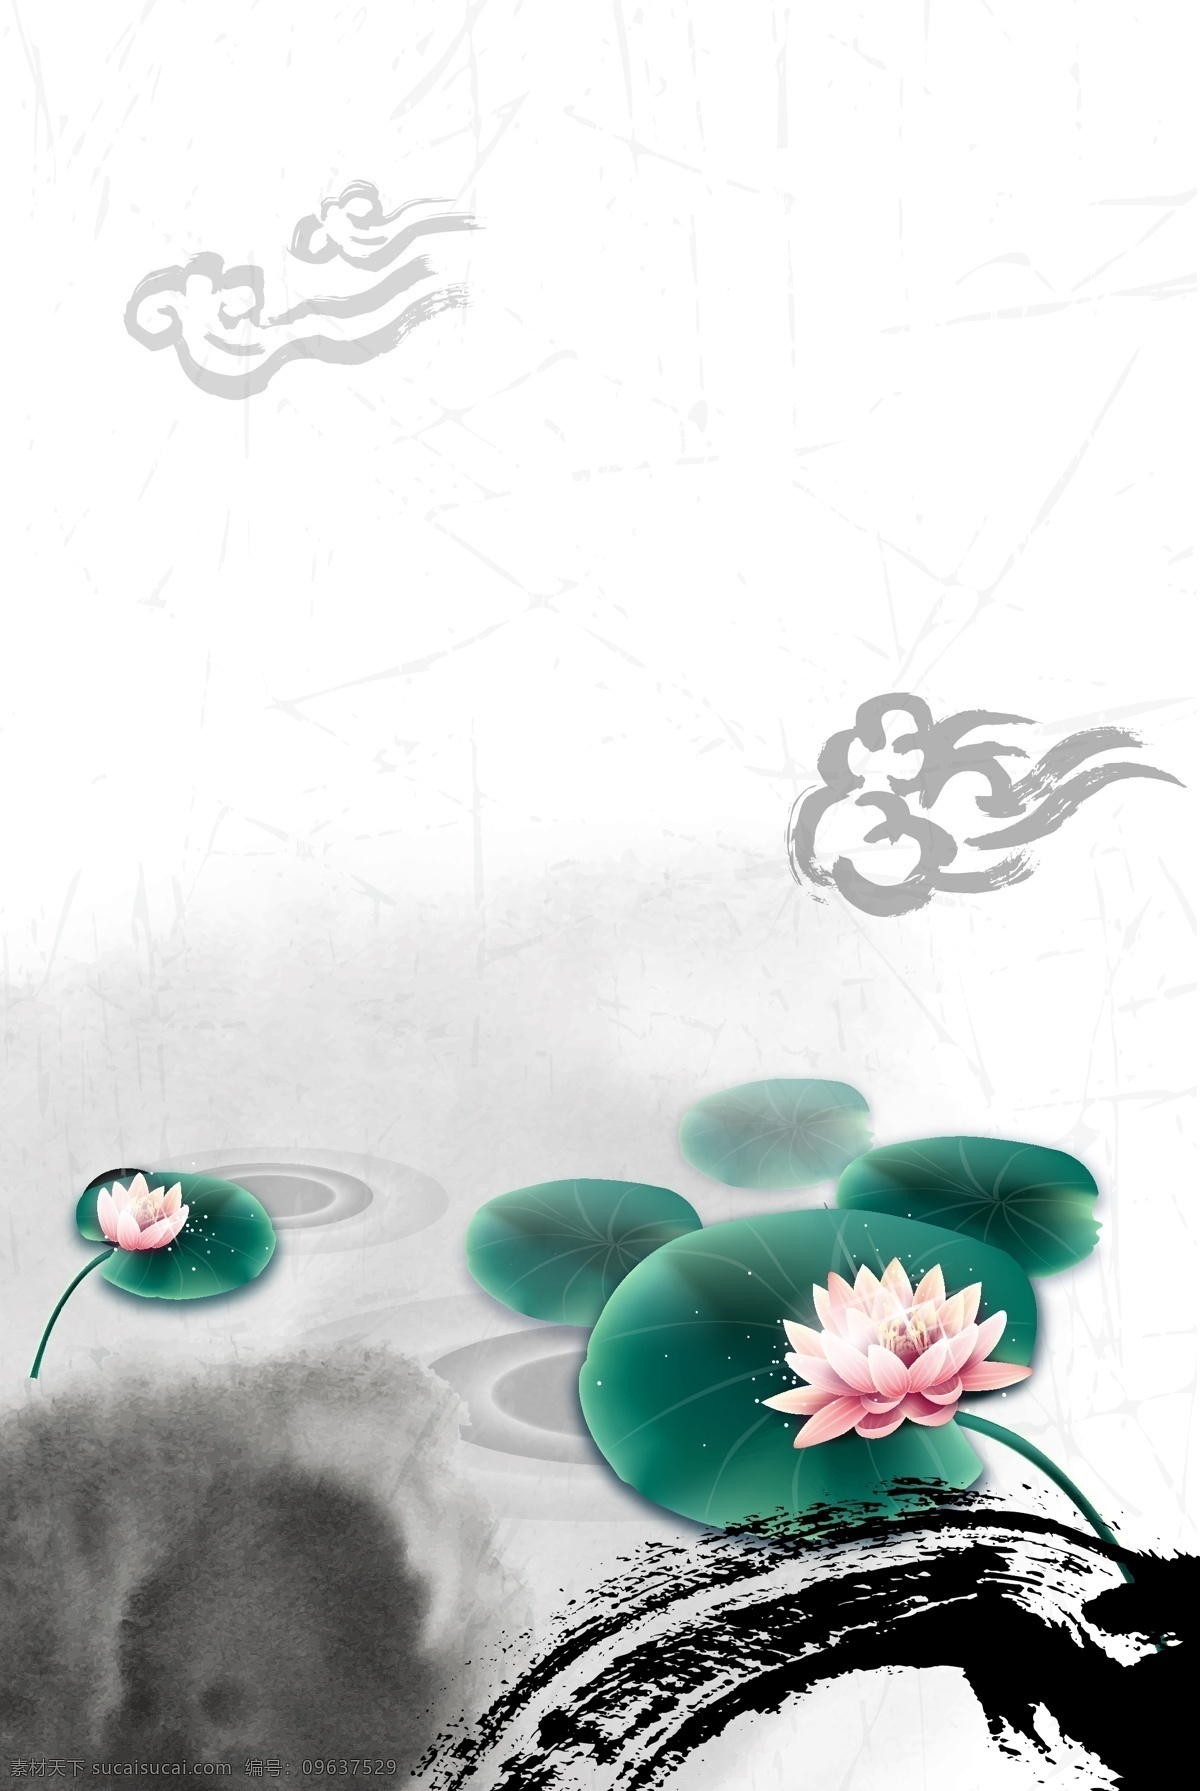 古典 中国 风 背景 水墨 荷花 纹理 ai矢量 文件素材 底纹边框 花边花纹